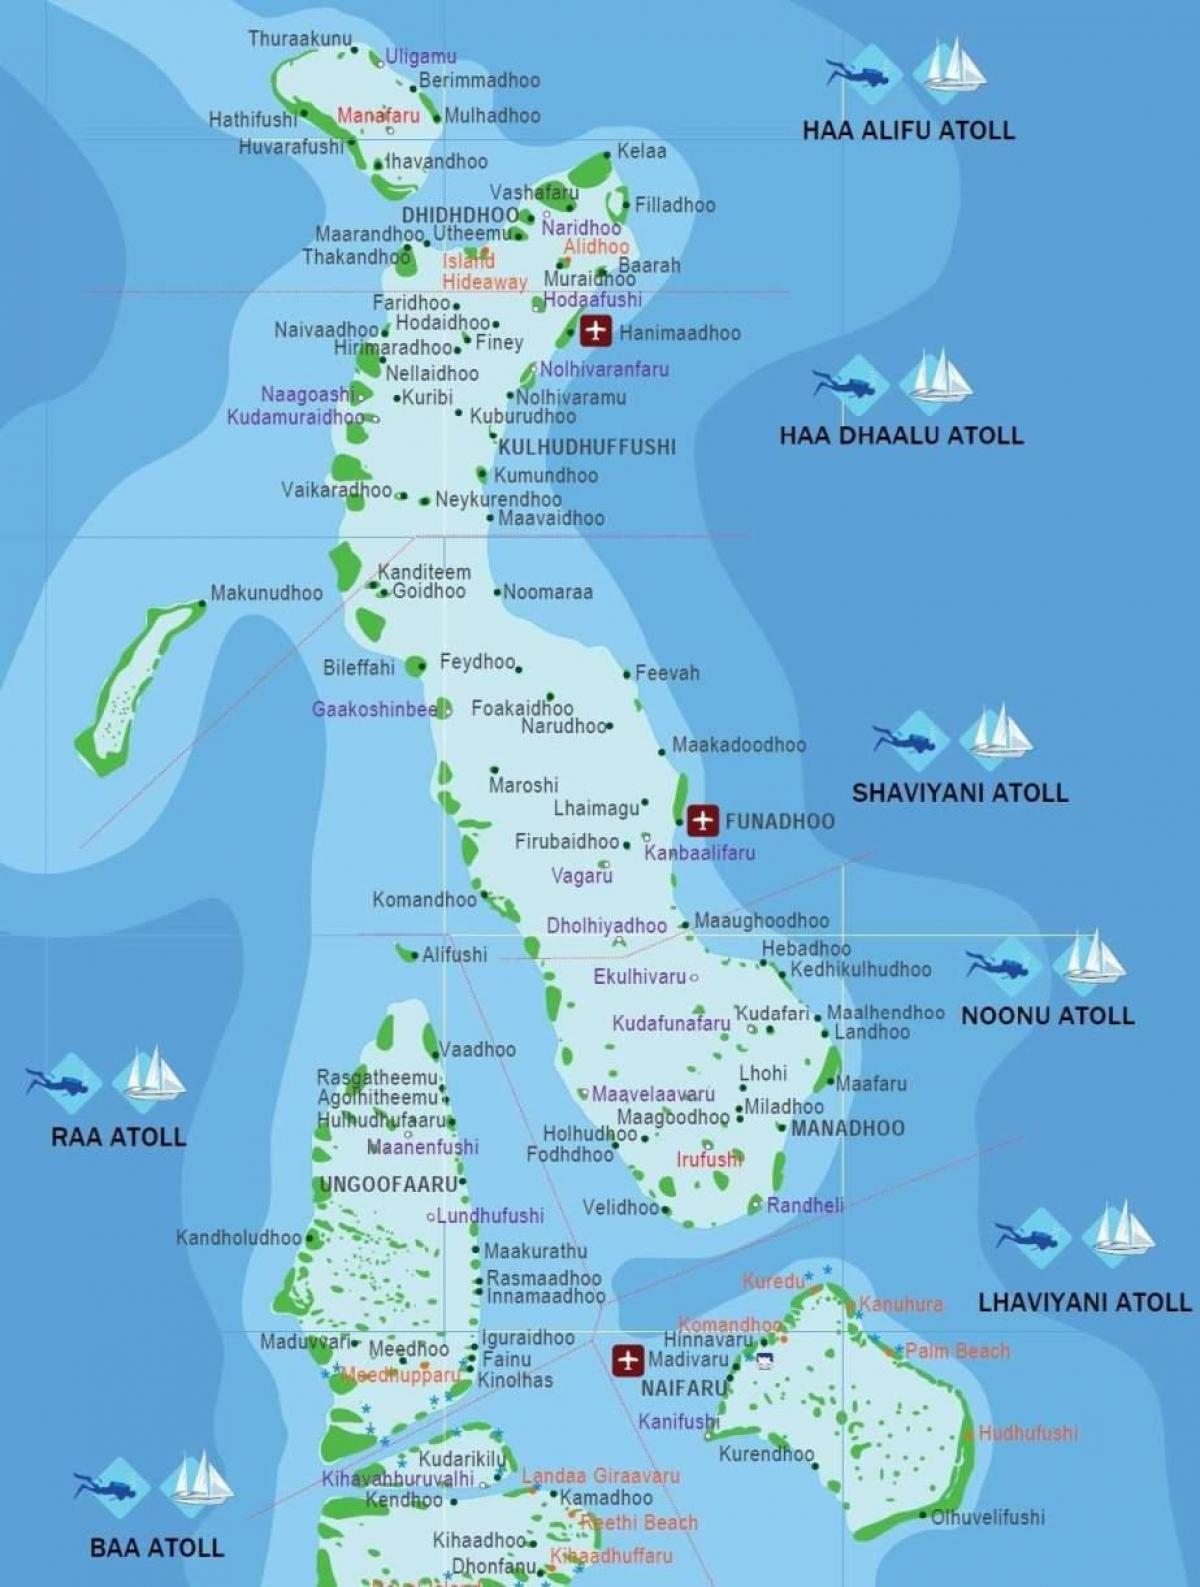 ang buong mapa ng maldives